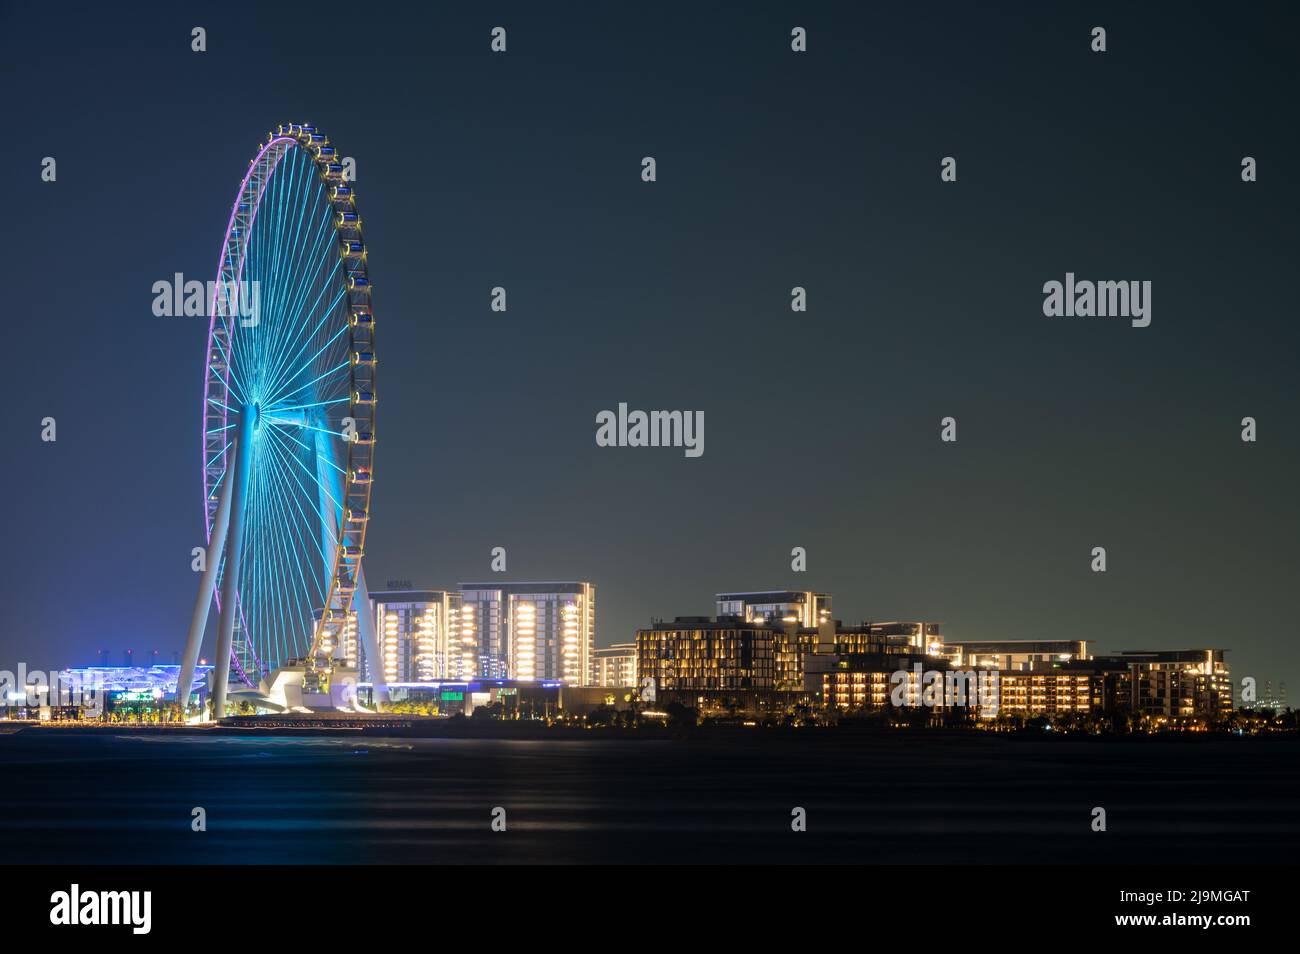 Ein wunderschöner Blick auf das Dubai Eye Ferris Wheel, das von der Palme Jumeirah westlich von Dubai, VAE, aufgenommen wurde. Stockfoto